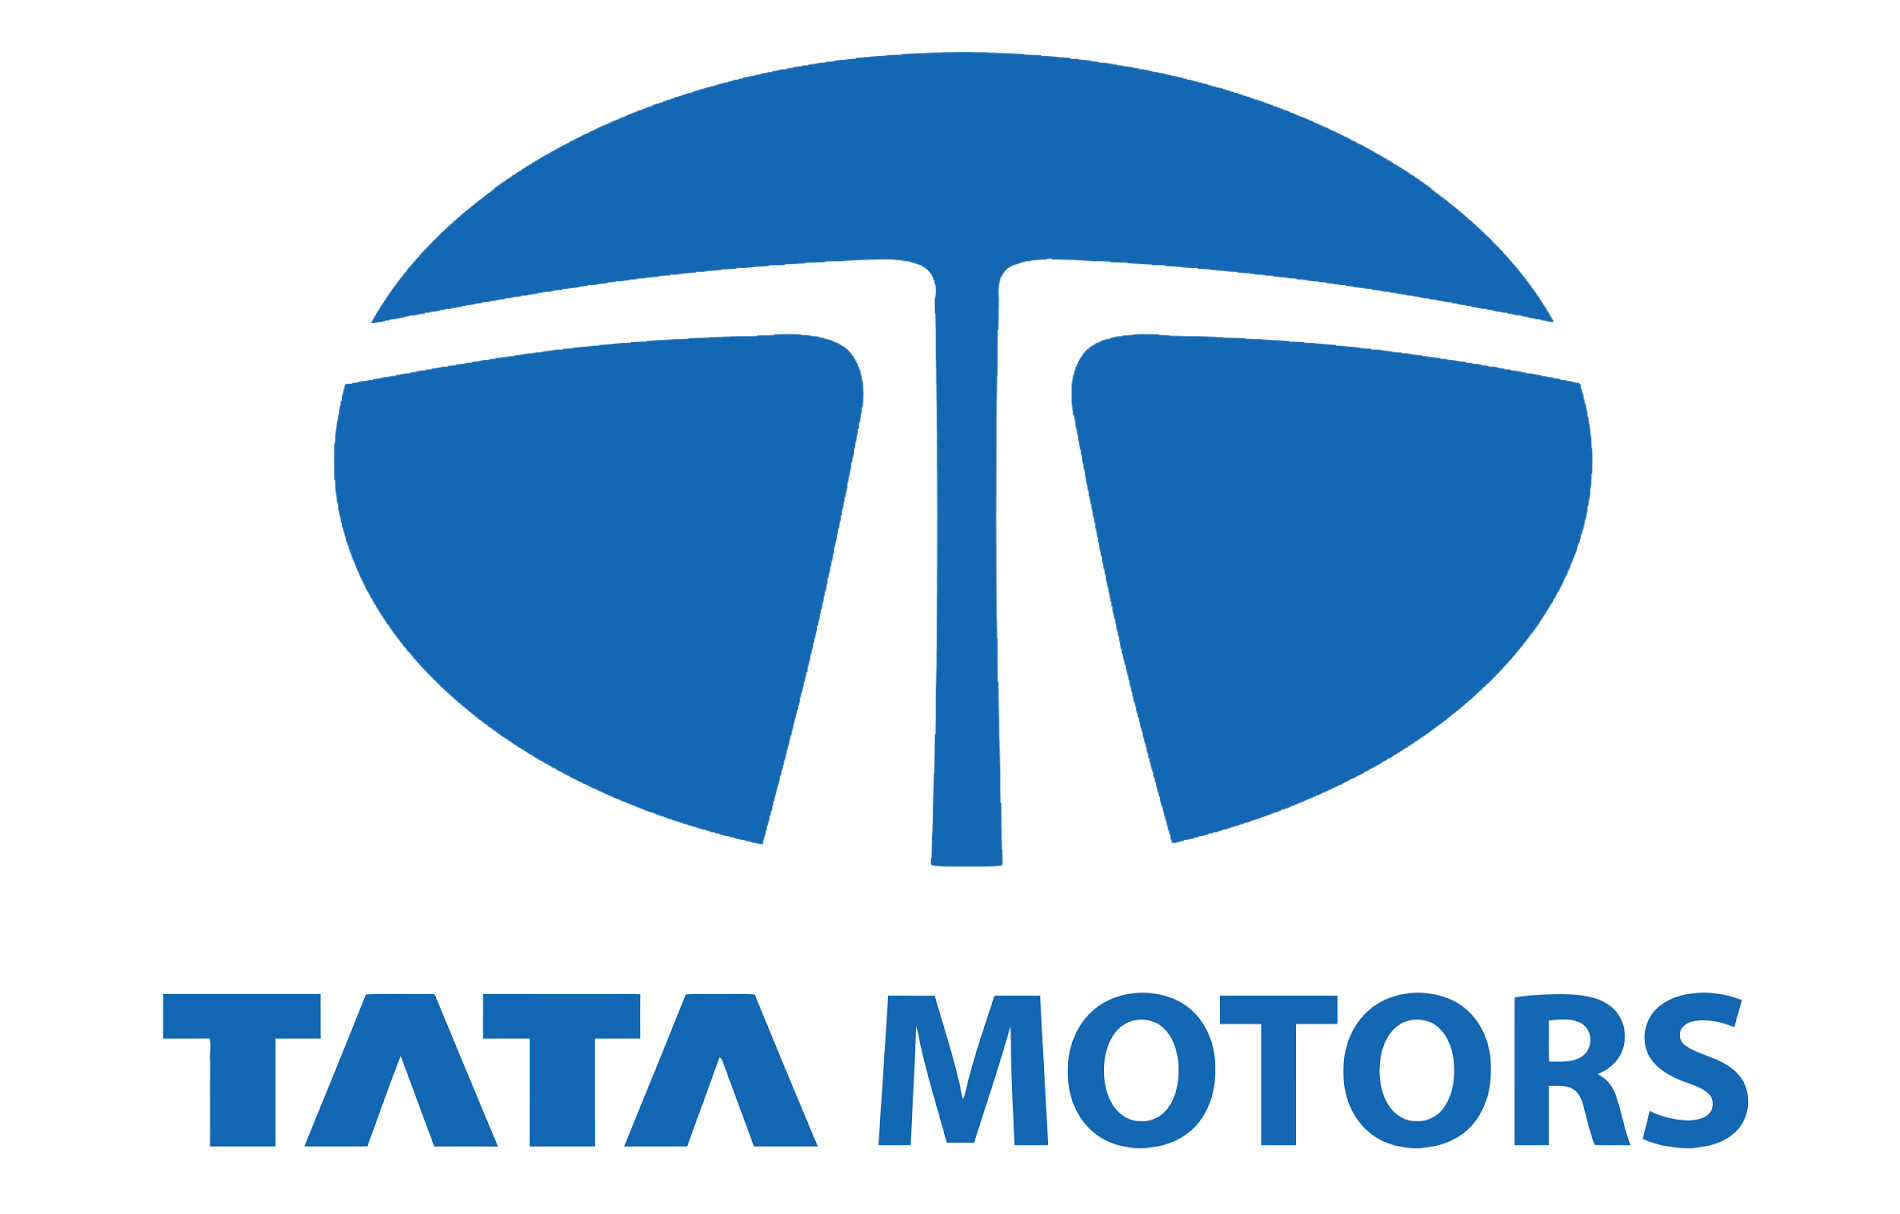 Tata Motors Cars Showroom - Monalisha Motors|Show Room|Automotive